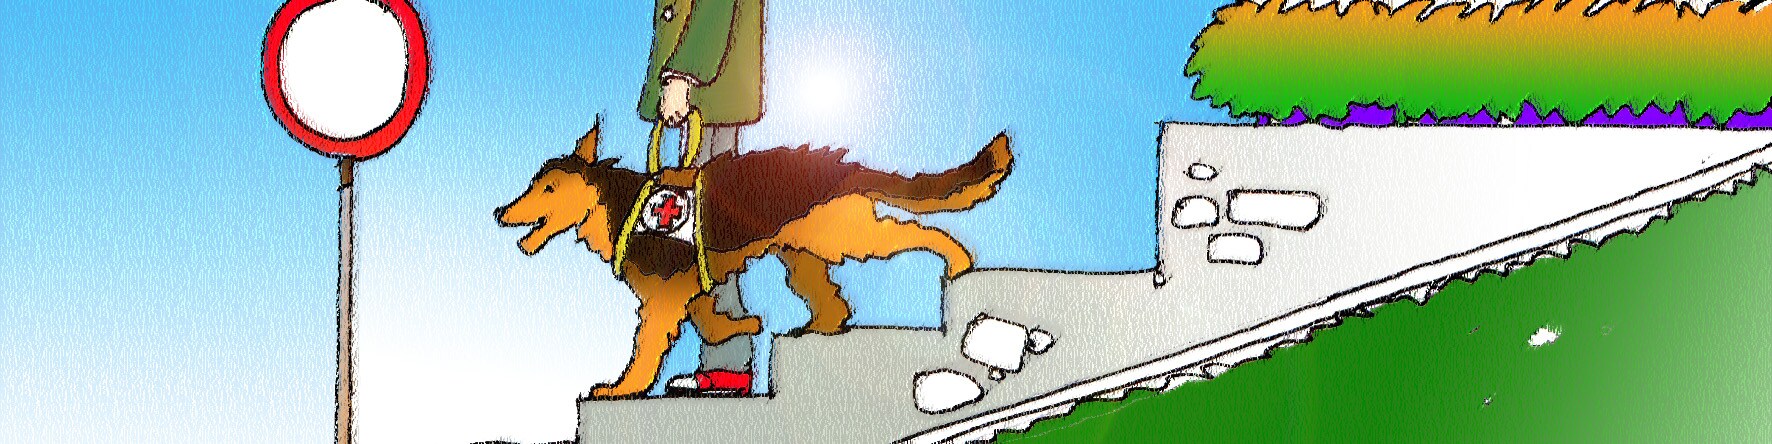 Immagine un cane guida che scende le scale con un non vedente. (Per leggerne la descrizione proseguire nel link). Si vede il cane e la persona accompagnata ripresa dal basso poiché si vedono solo le gambe che scendono i gradini e parte della giacca.